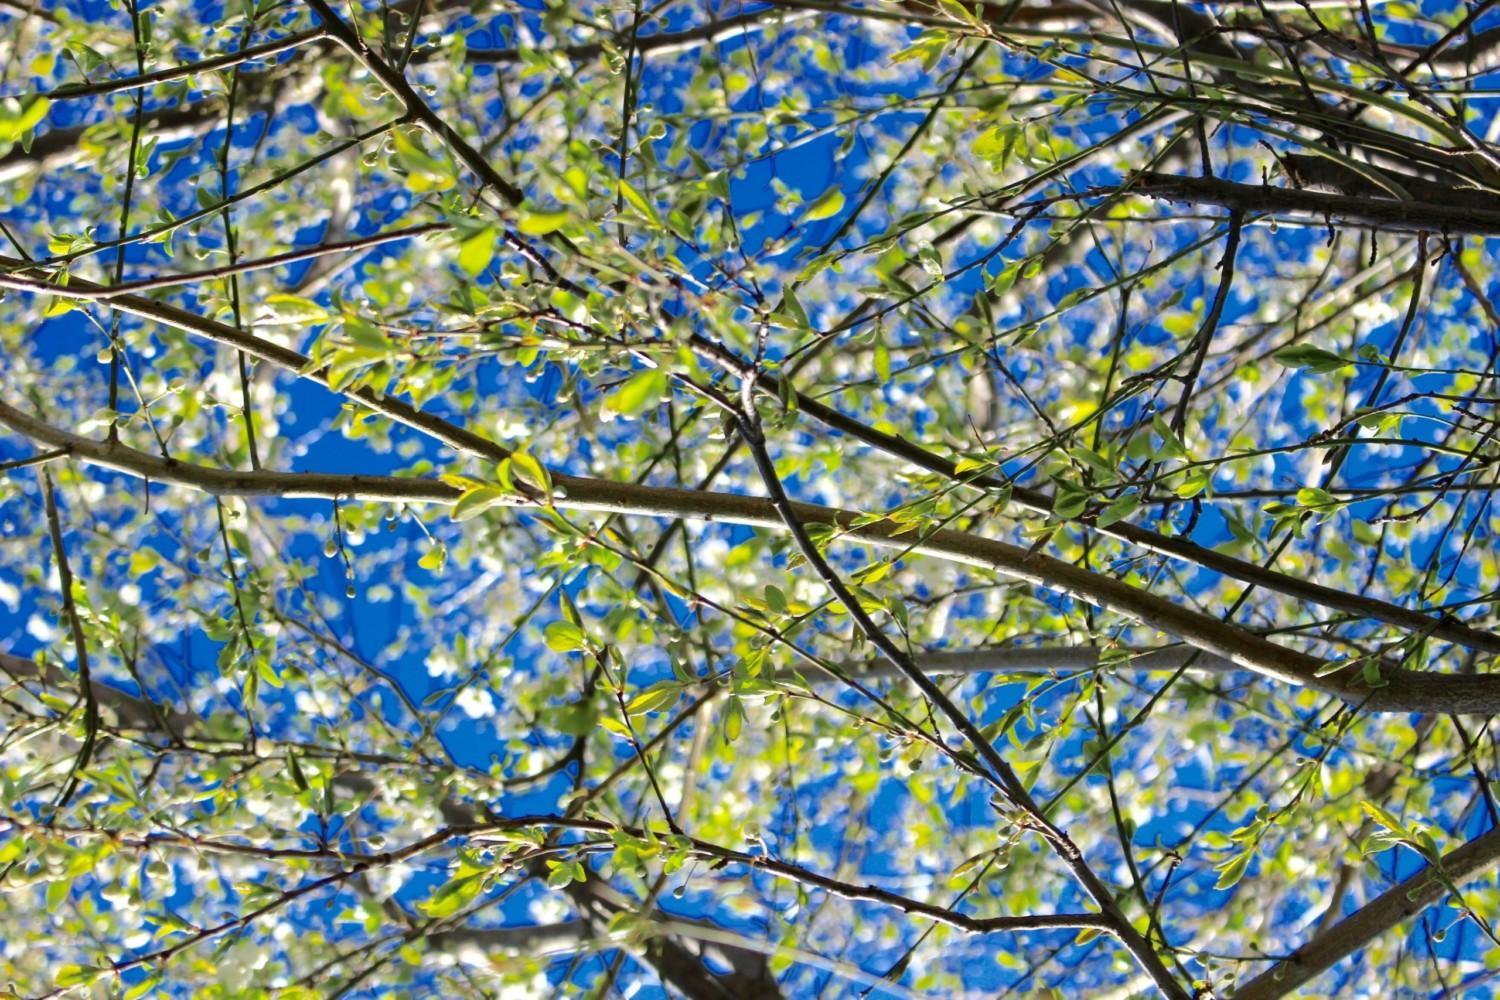 Vihreitä kukintoja puun oksissa taivasta vasten.